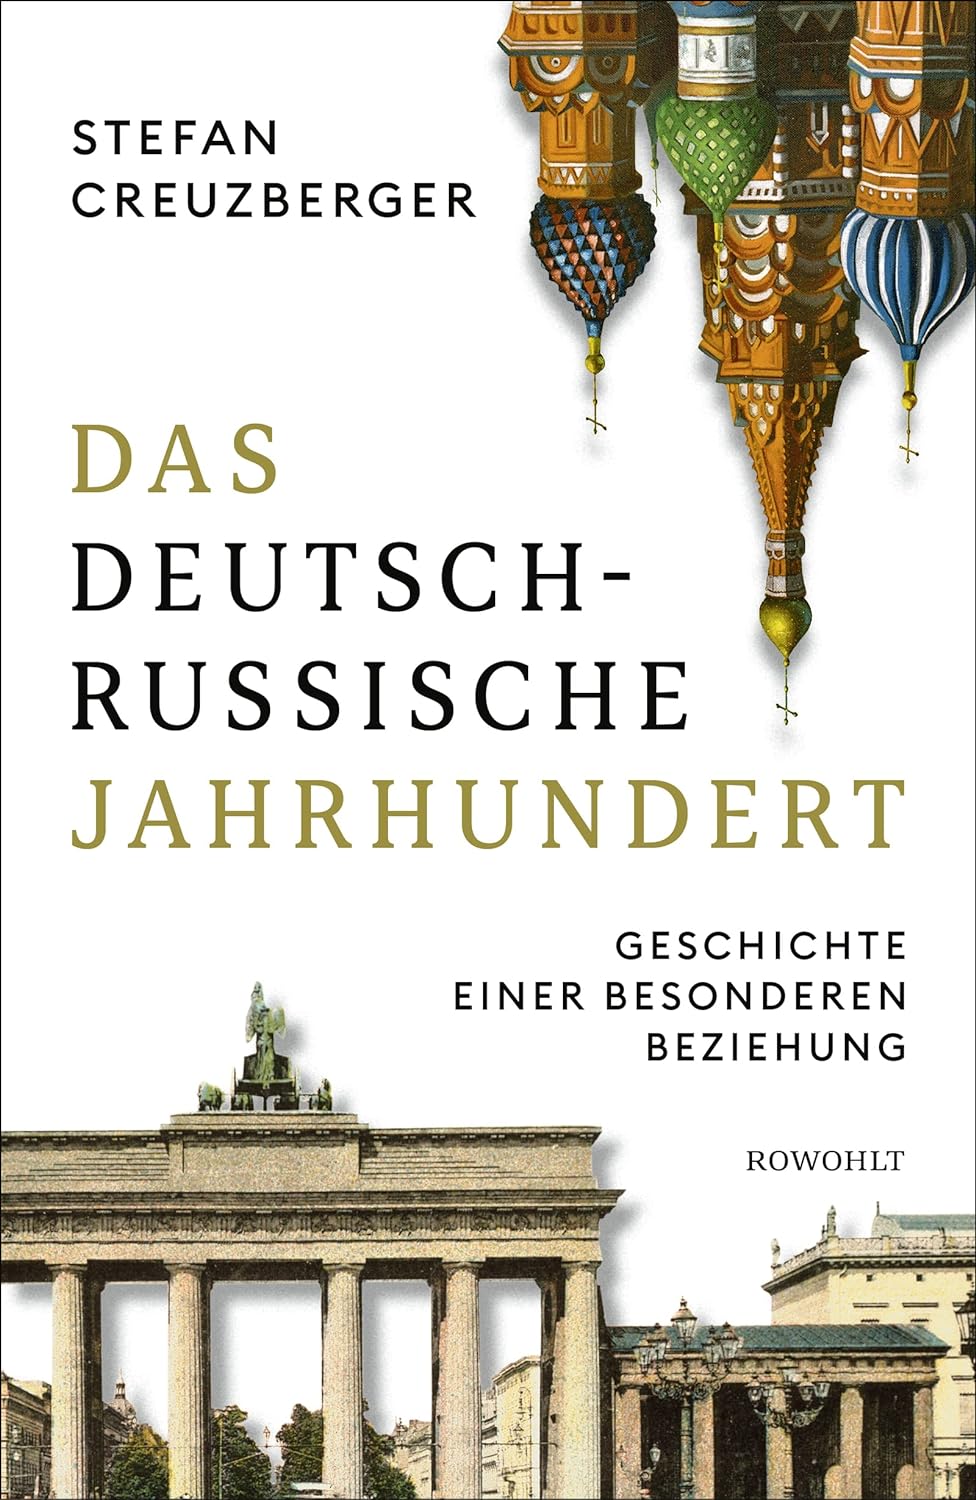 Buchcover: Das deutsch-russische Jahrhundert von Stefan Creuzberger